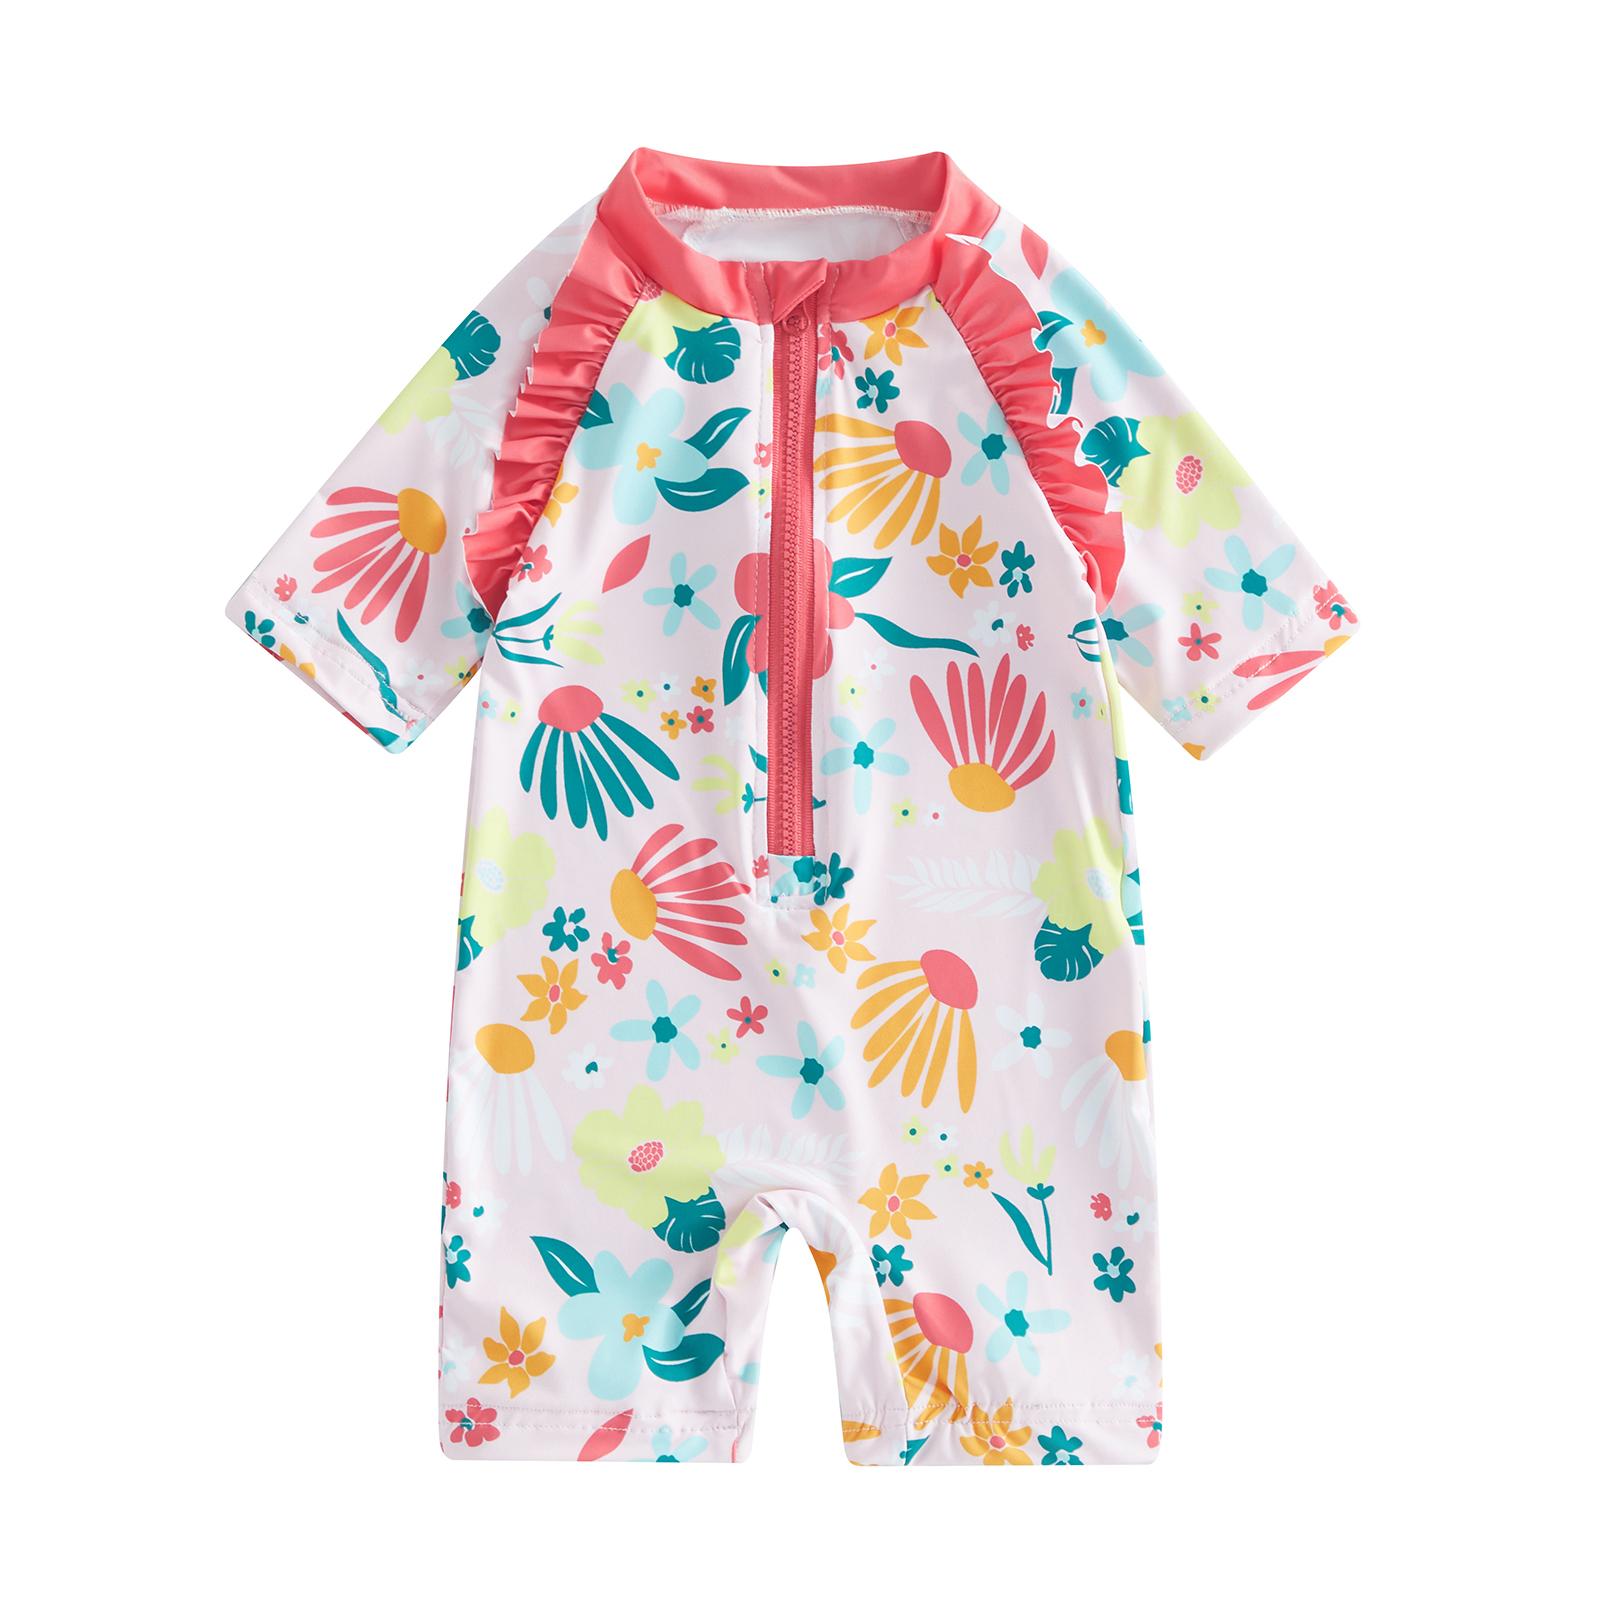 Little Fashionistas Toddler Girls Rash Guard Swimsuit 12M 18M 2Y 3Y 4Y 5Y 6Y  Summer Short Sleeve Floral Print Ruffle Bathing Suit